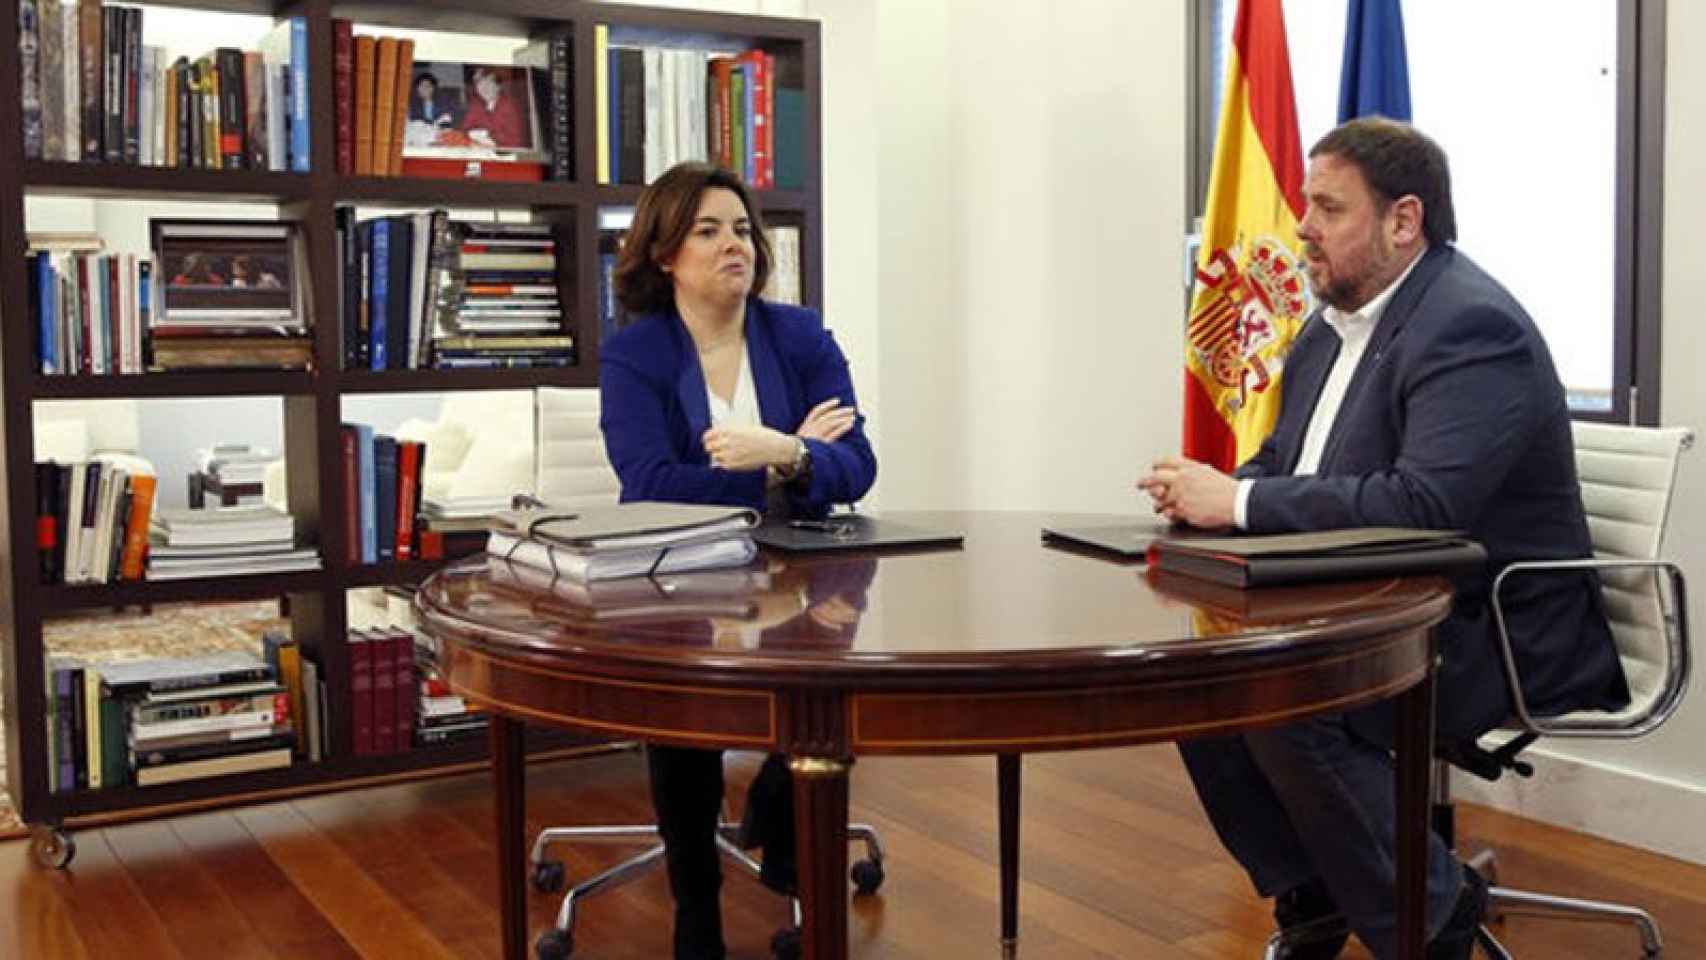 La vicepresidenta española Soraya Sáenz de Santamaría y el vicepresidente catalán Oriol Junqueras, en una reunión en la Moncloa / CG